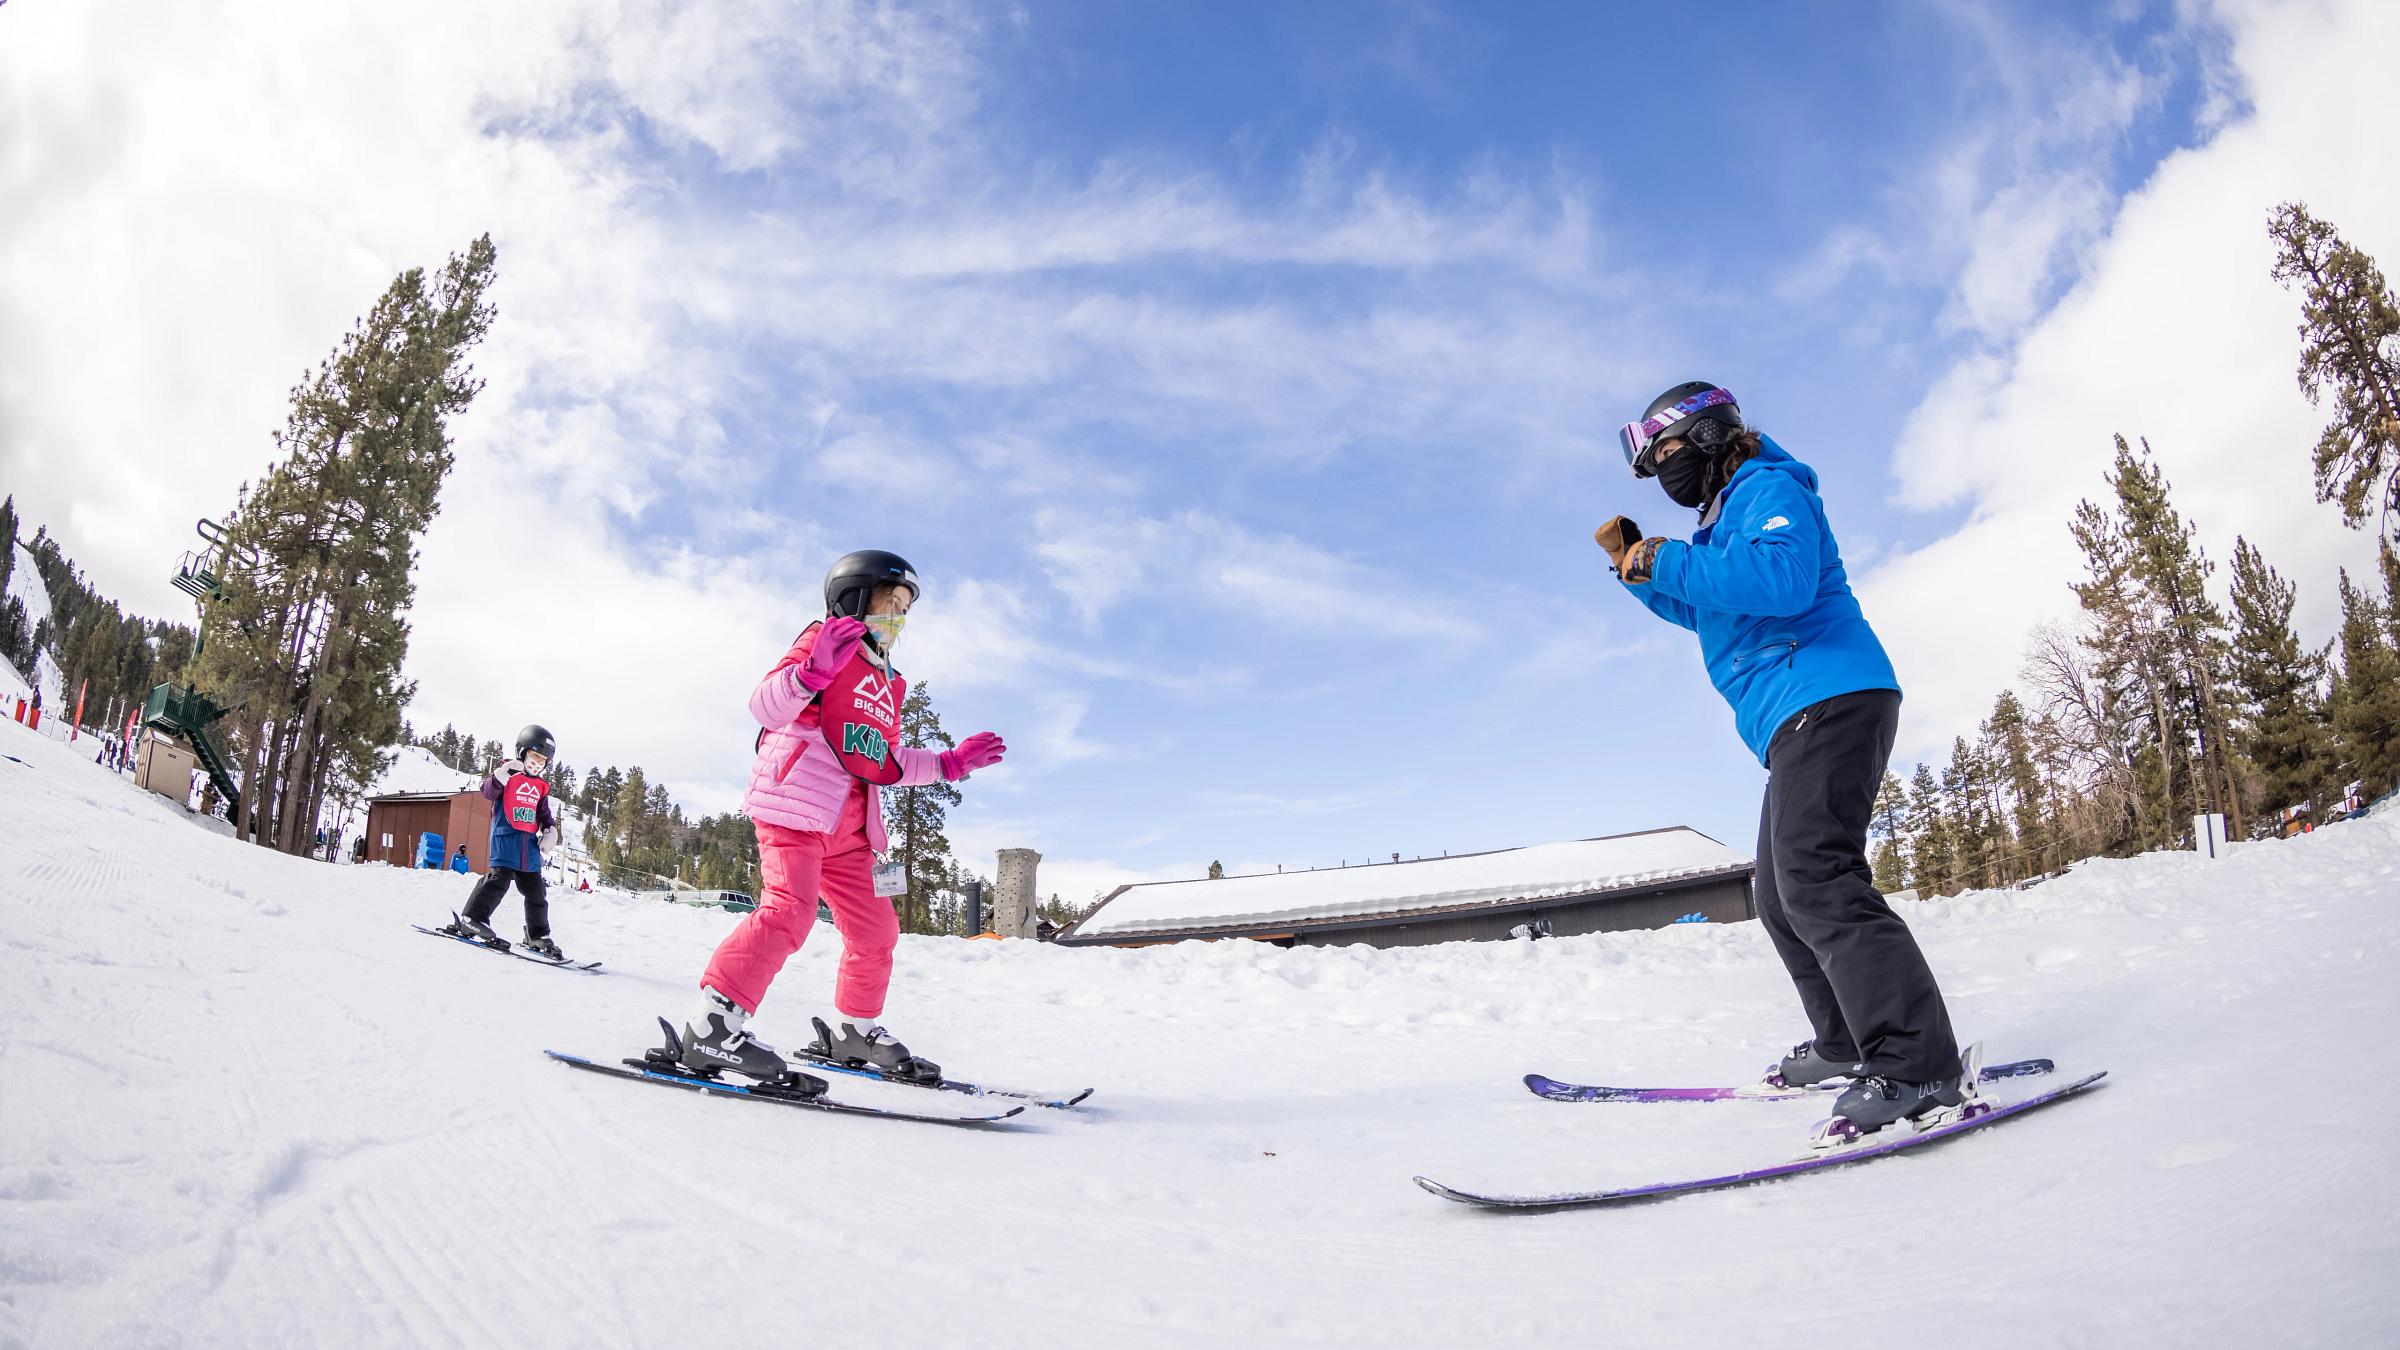 Winter Ski & Board Pants-Kids Ski Bib, Ages 4-7